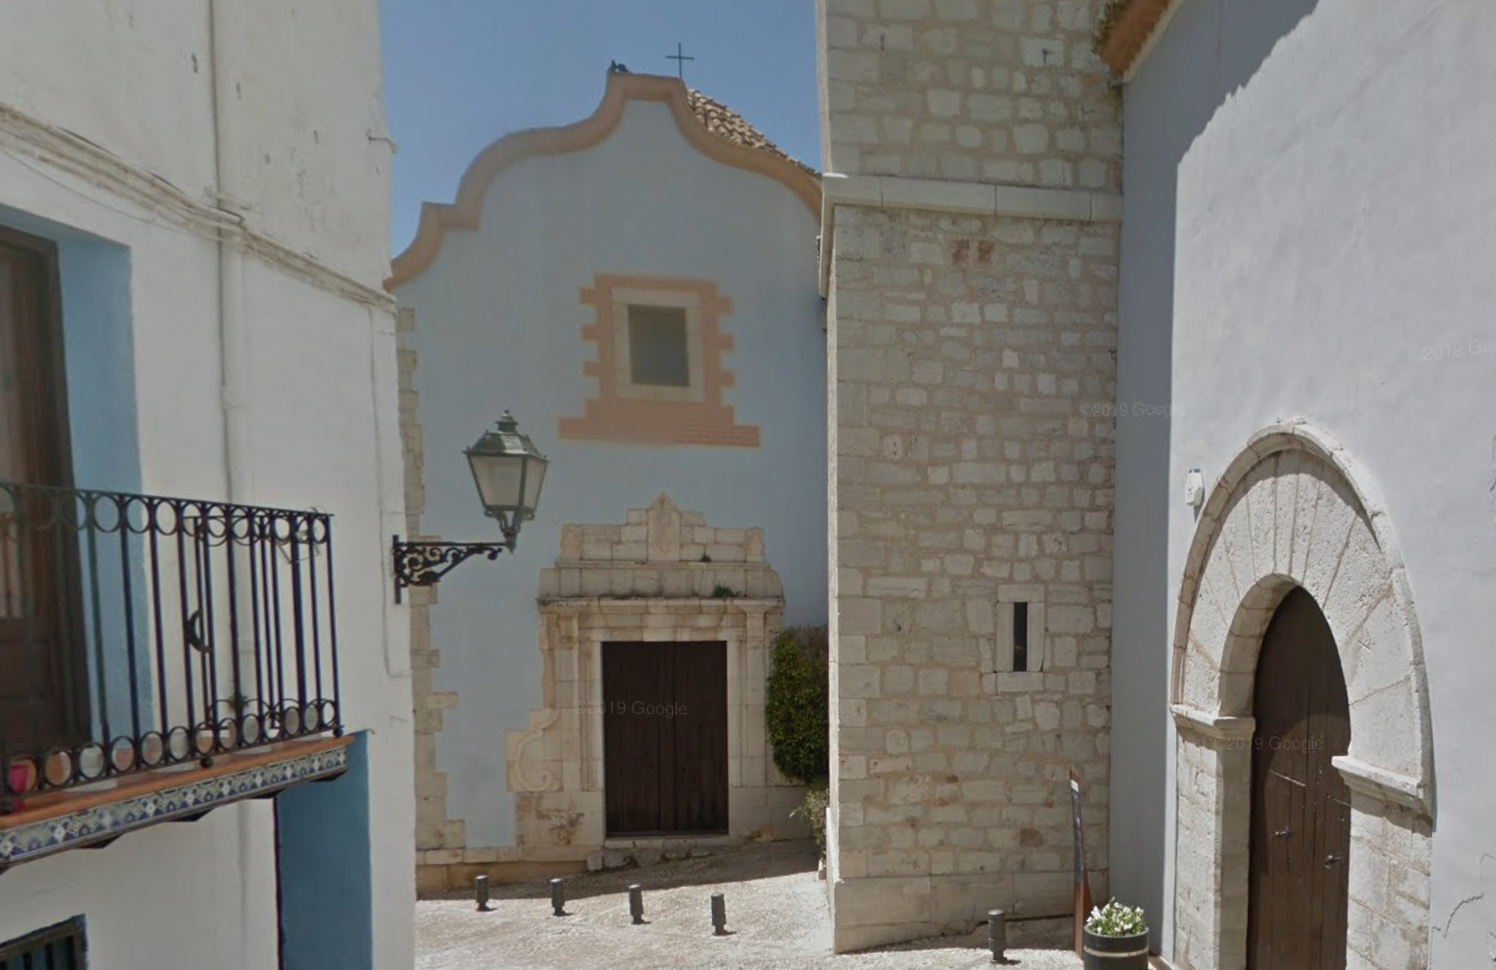 Parròquia Santa Maria by Google Earth